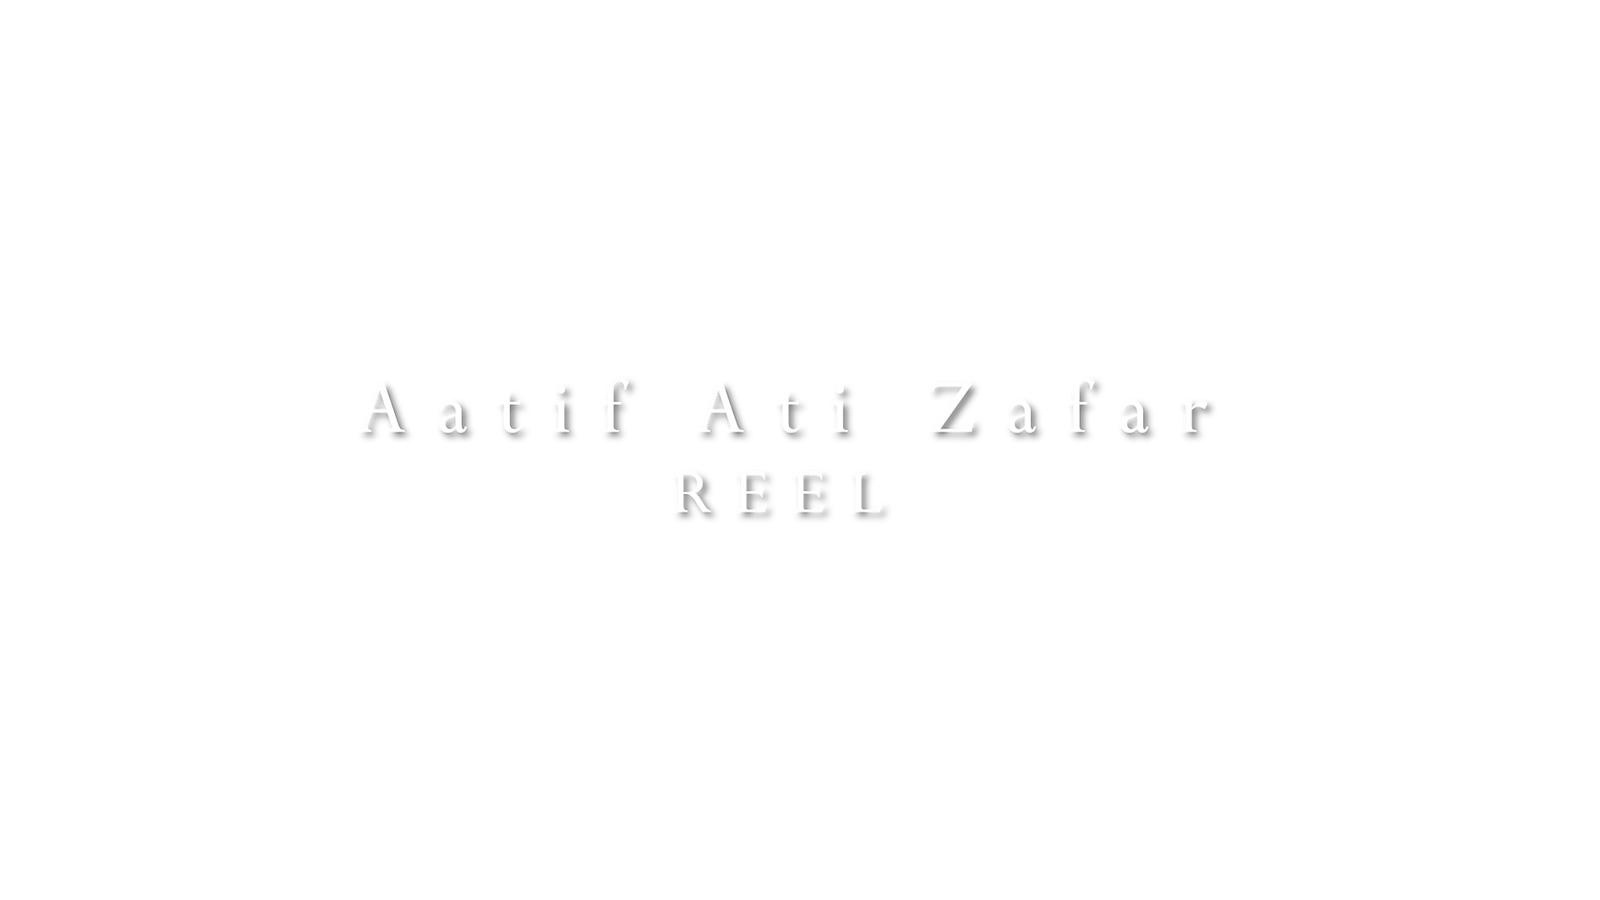 Aatif Ati Zafar Reel 2019